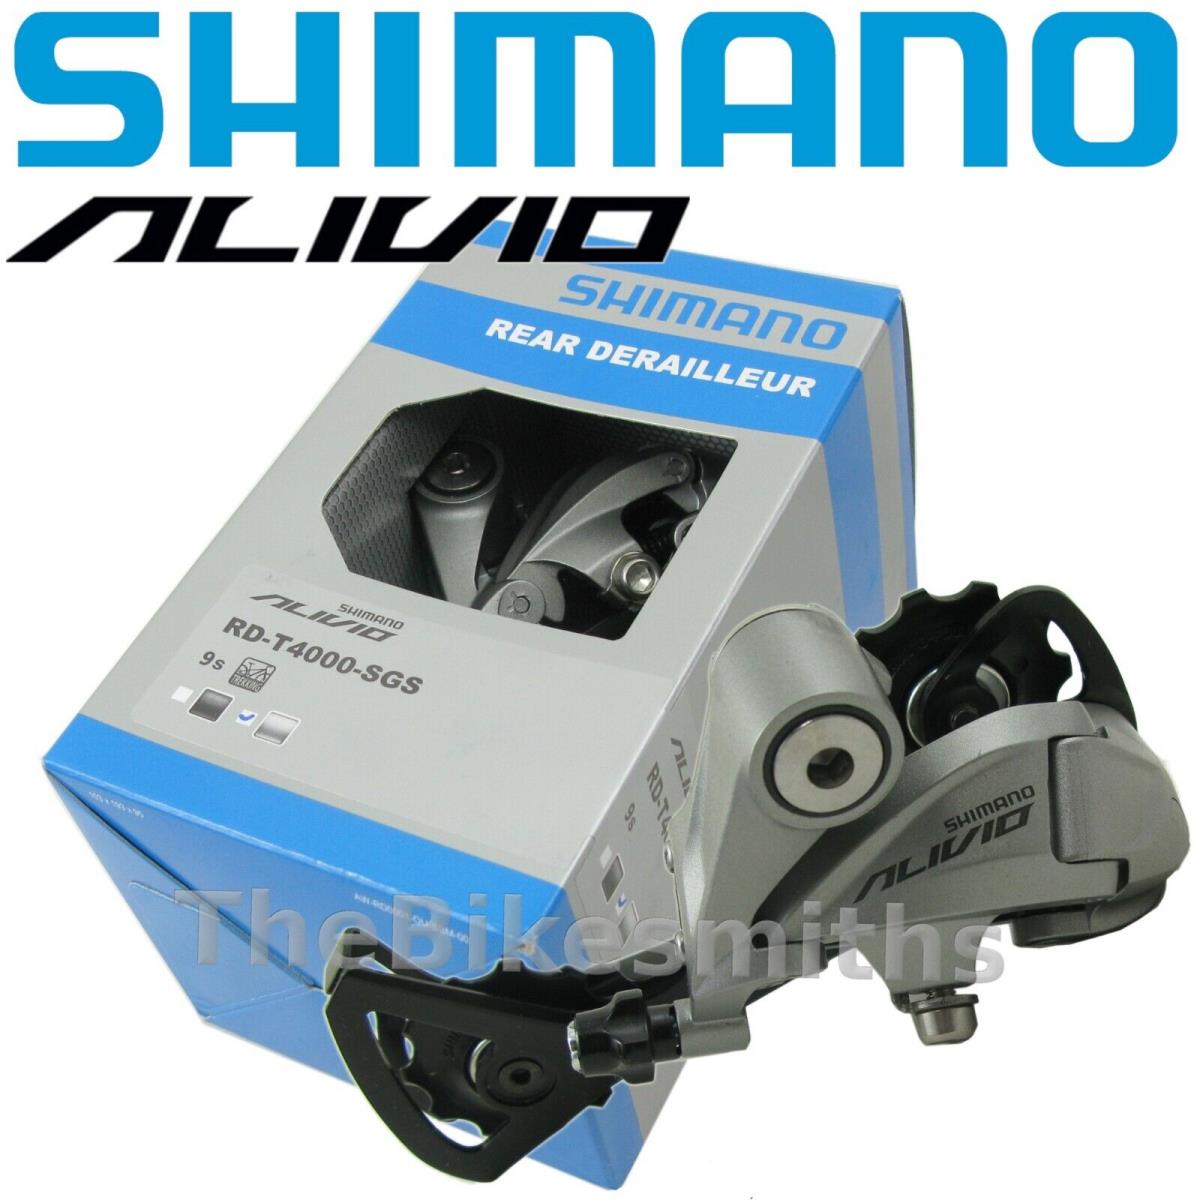 Shimano Alivio RD-T4000 Sgs 9 Speed Bike Rear Derailleur - Silver / Black